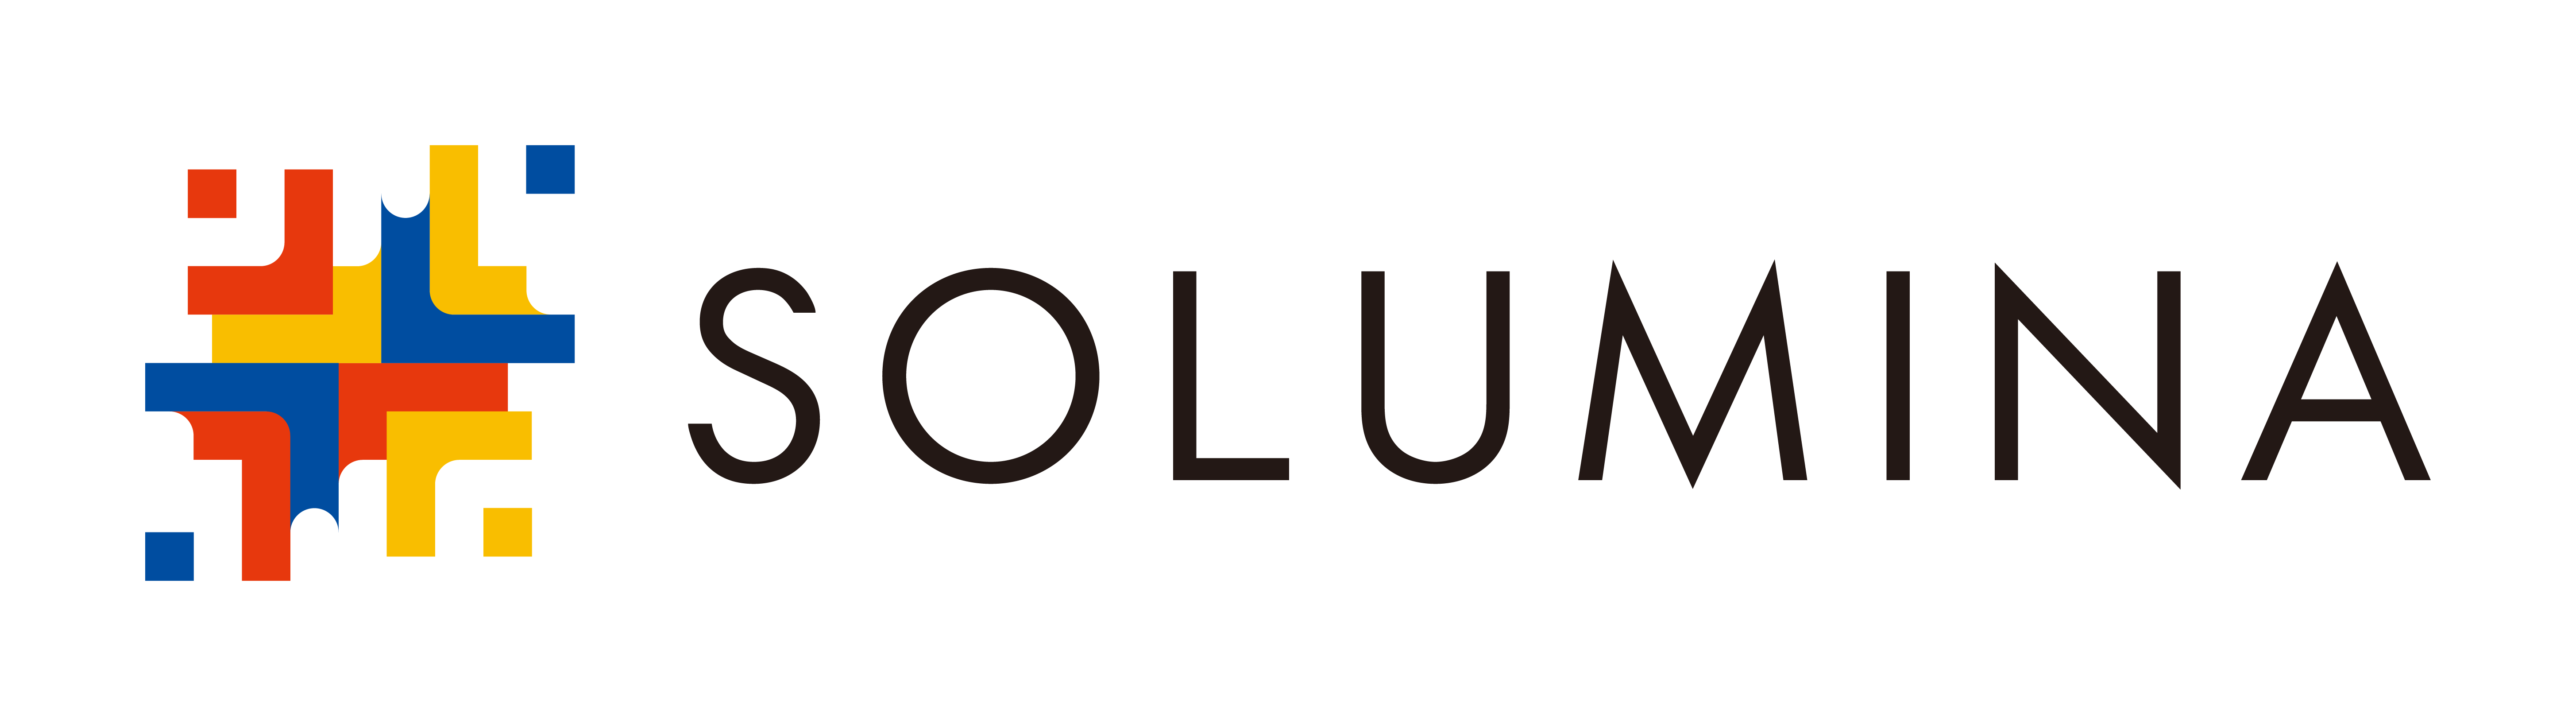 Solumina Co., Ltd.